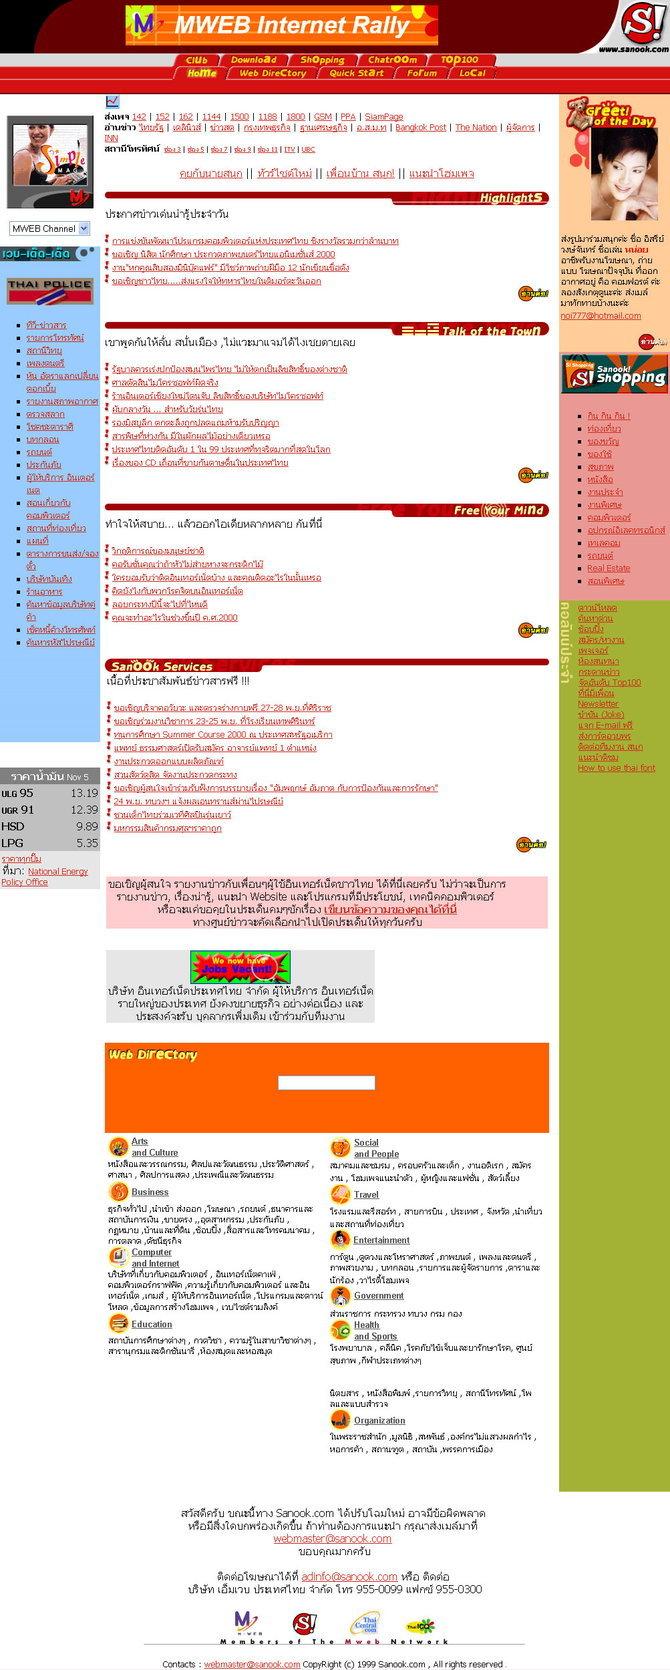 ภาพหน้าเว็บไซต์ Sanook.com ตั้งแต่อดีต ถึง ปัจจุบัน